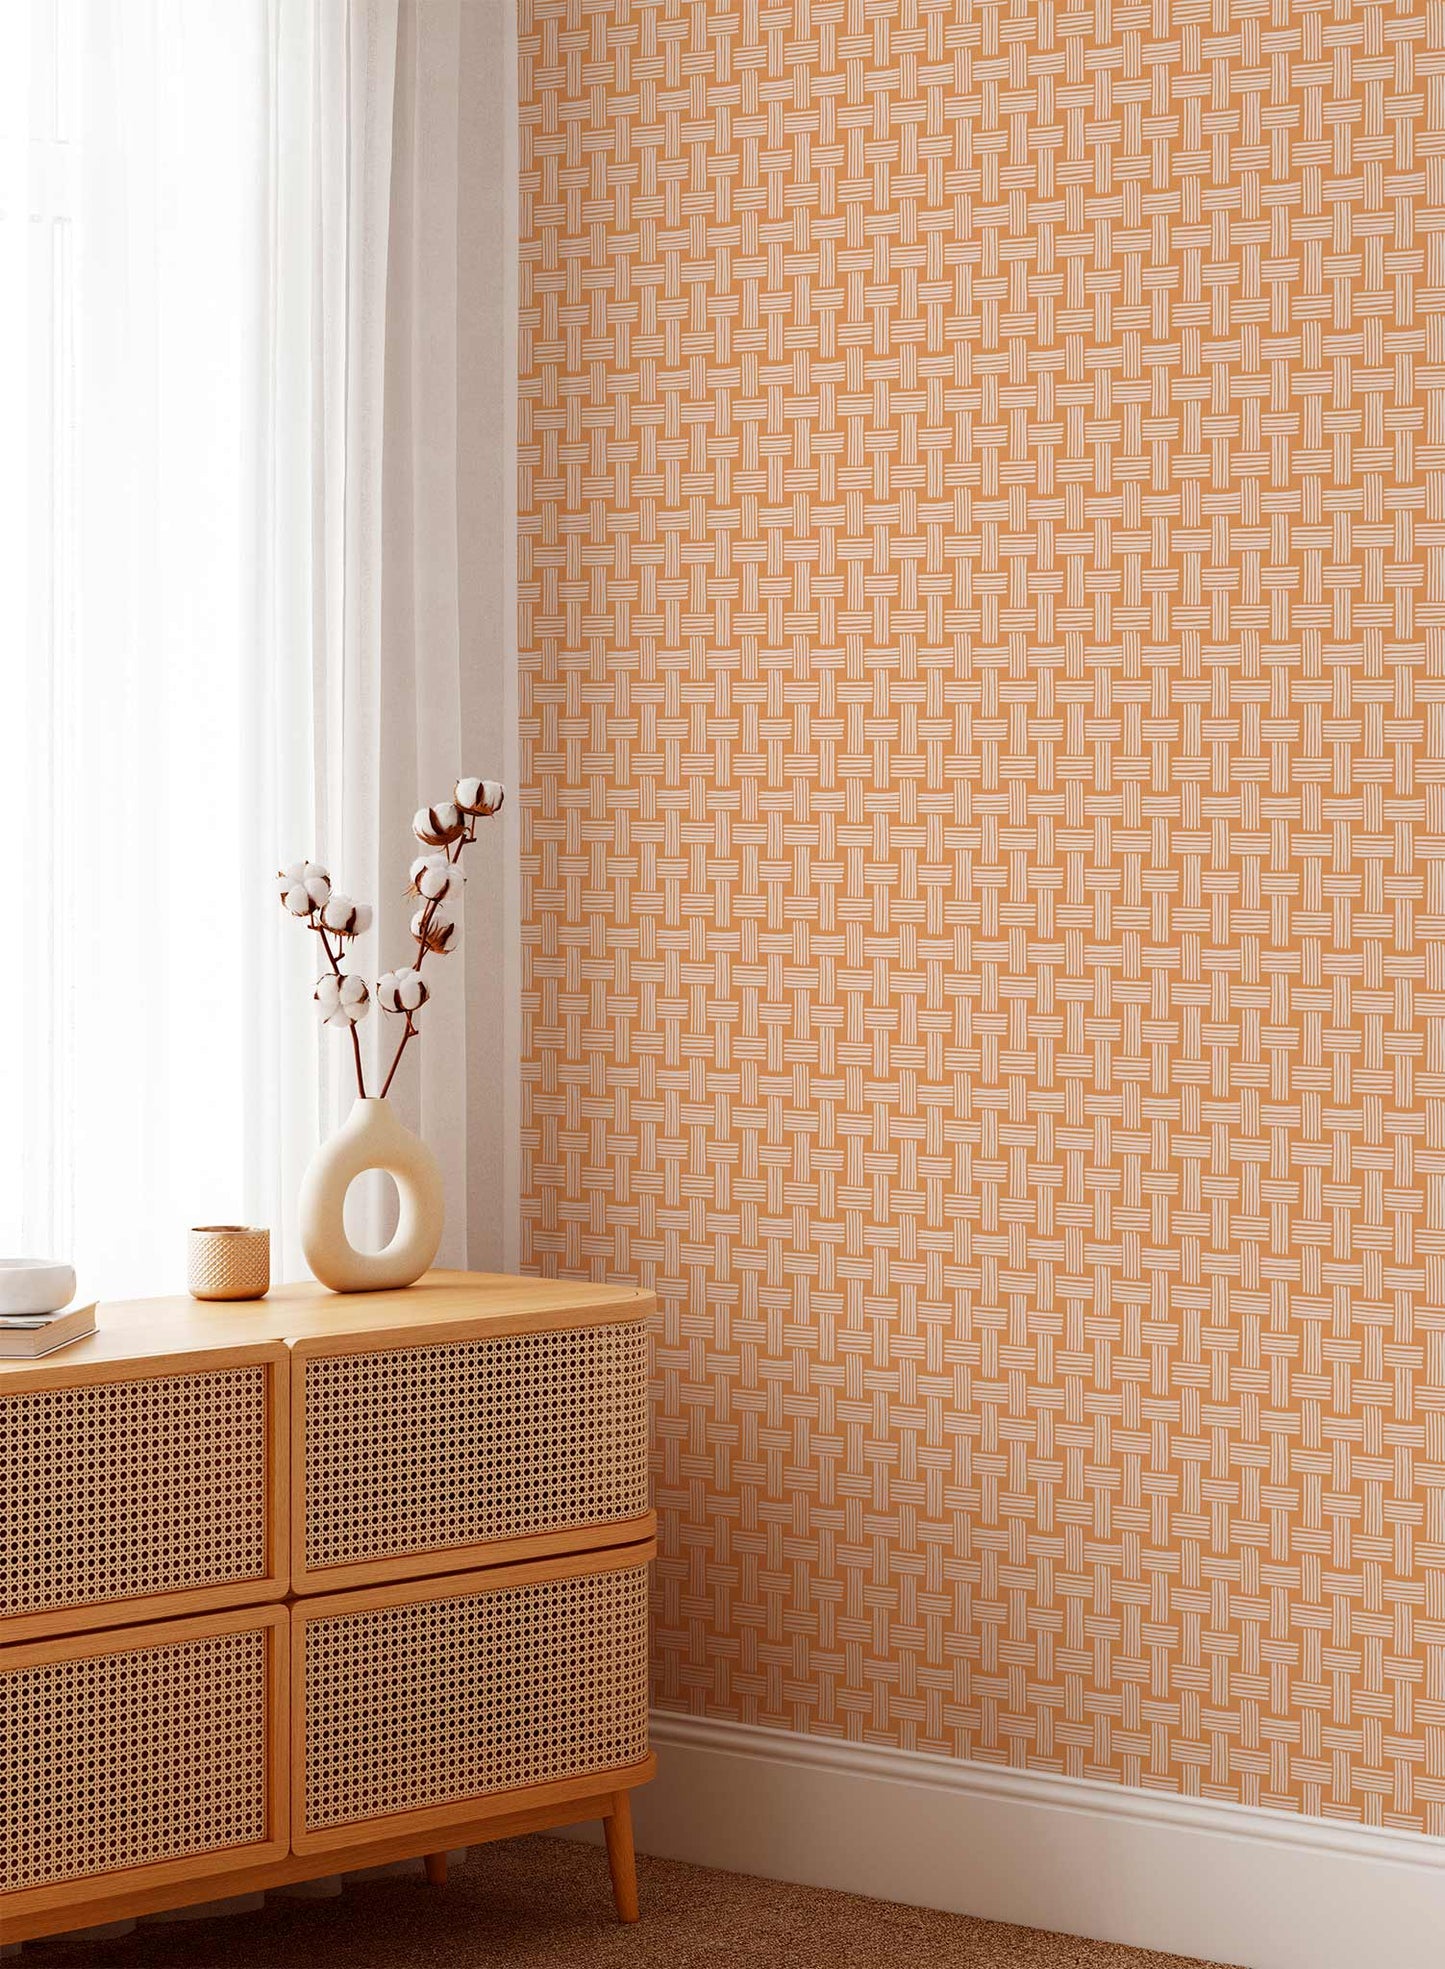 Basket Case is a minimalist wallpaper by Opposite Wall of a basket weave pattern.